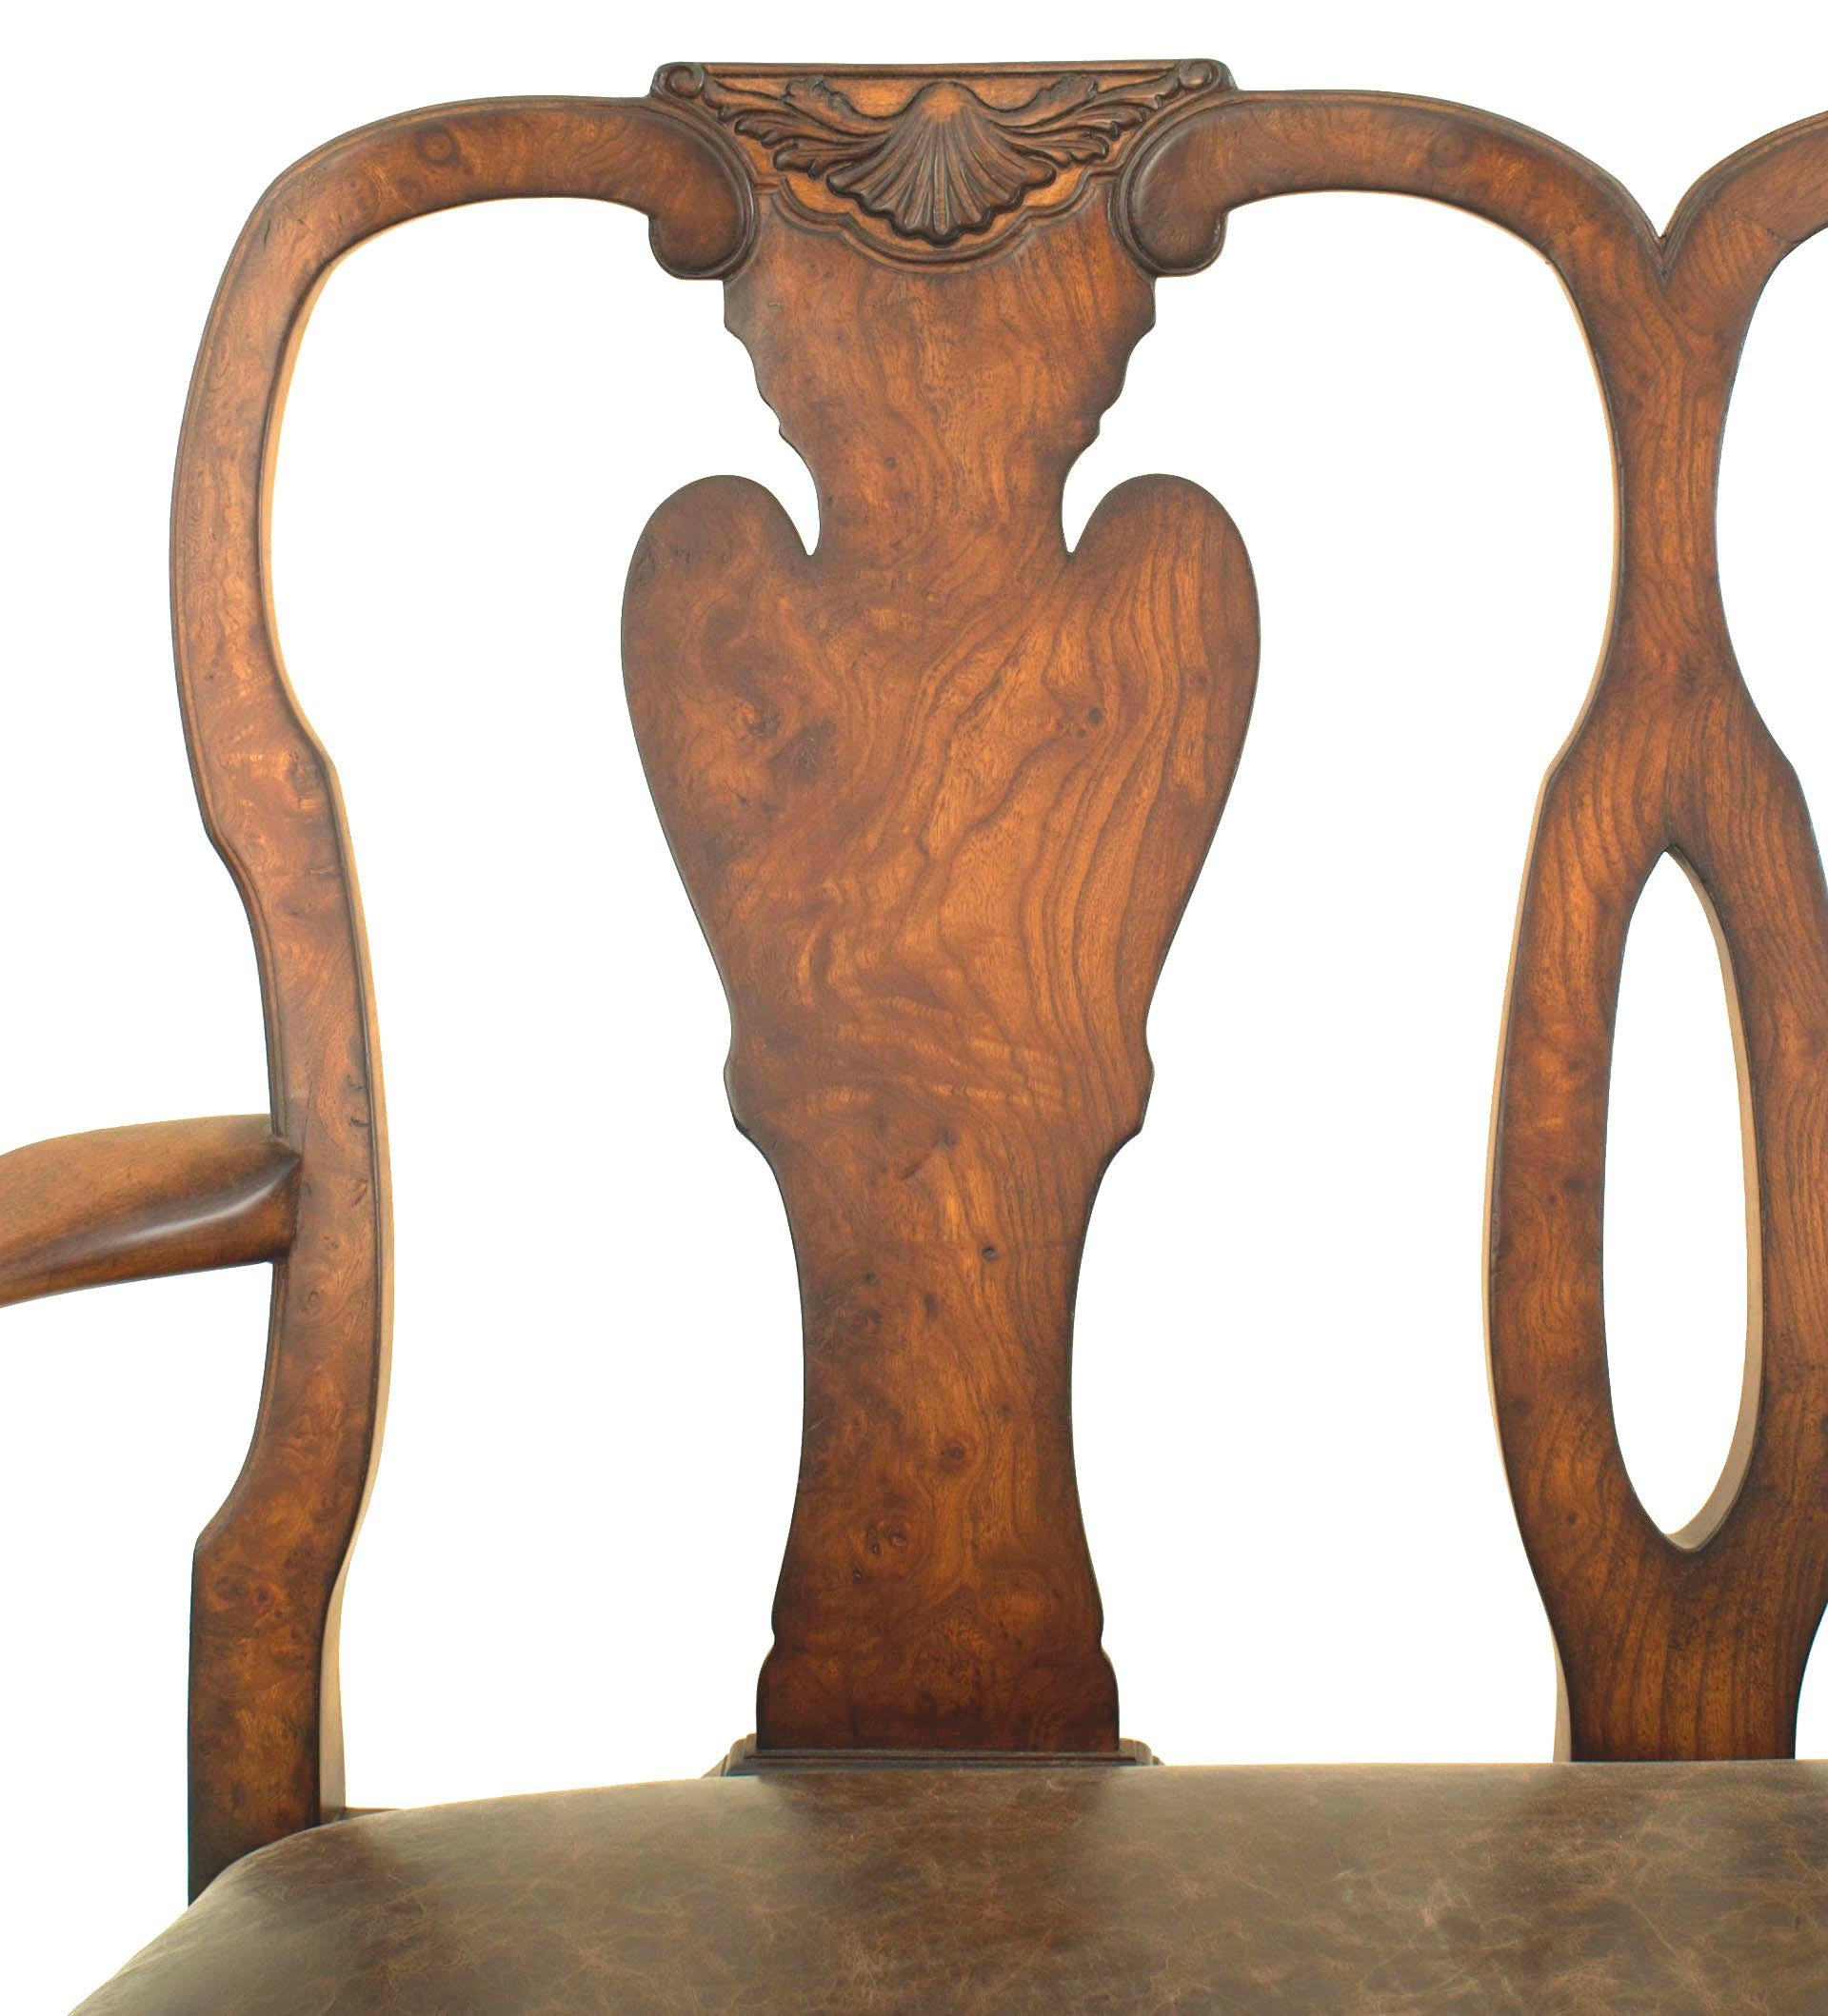 Causeuse anglaise de style Queen Anne (moderne) à bras ouvert avec une crête sculptée sur un double dossier de chaise et un siège à glissement tapissé de cuir brun.
 